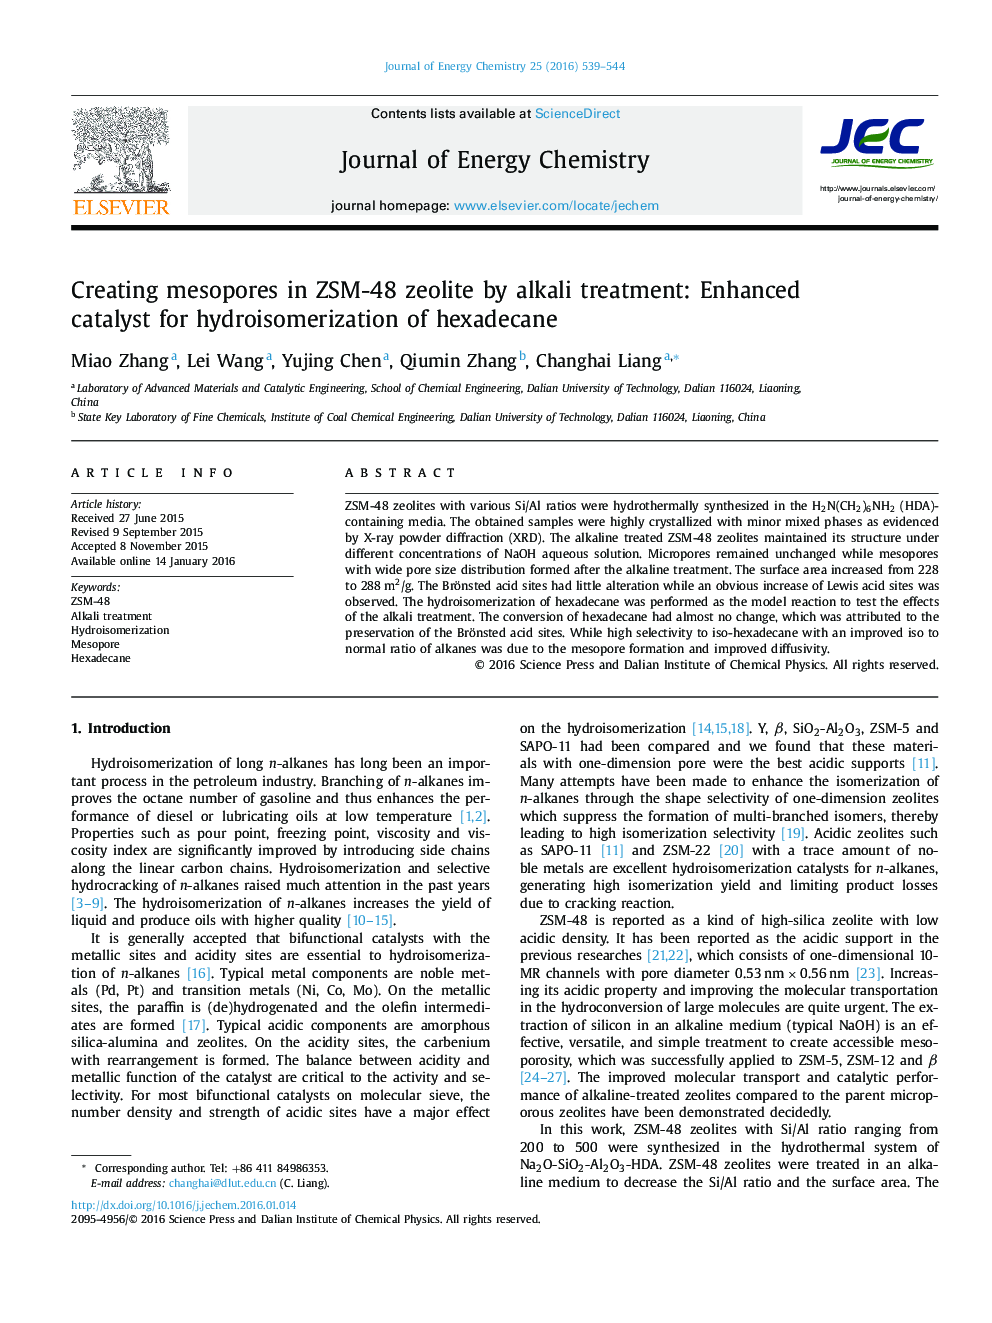 ایجاد مزوپور در ZSM-48 زئولیت با درمان قلیایی: کاتالیزور پیشرفته برای هیدروایزومریزاسیون هگزادکان